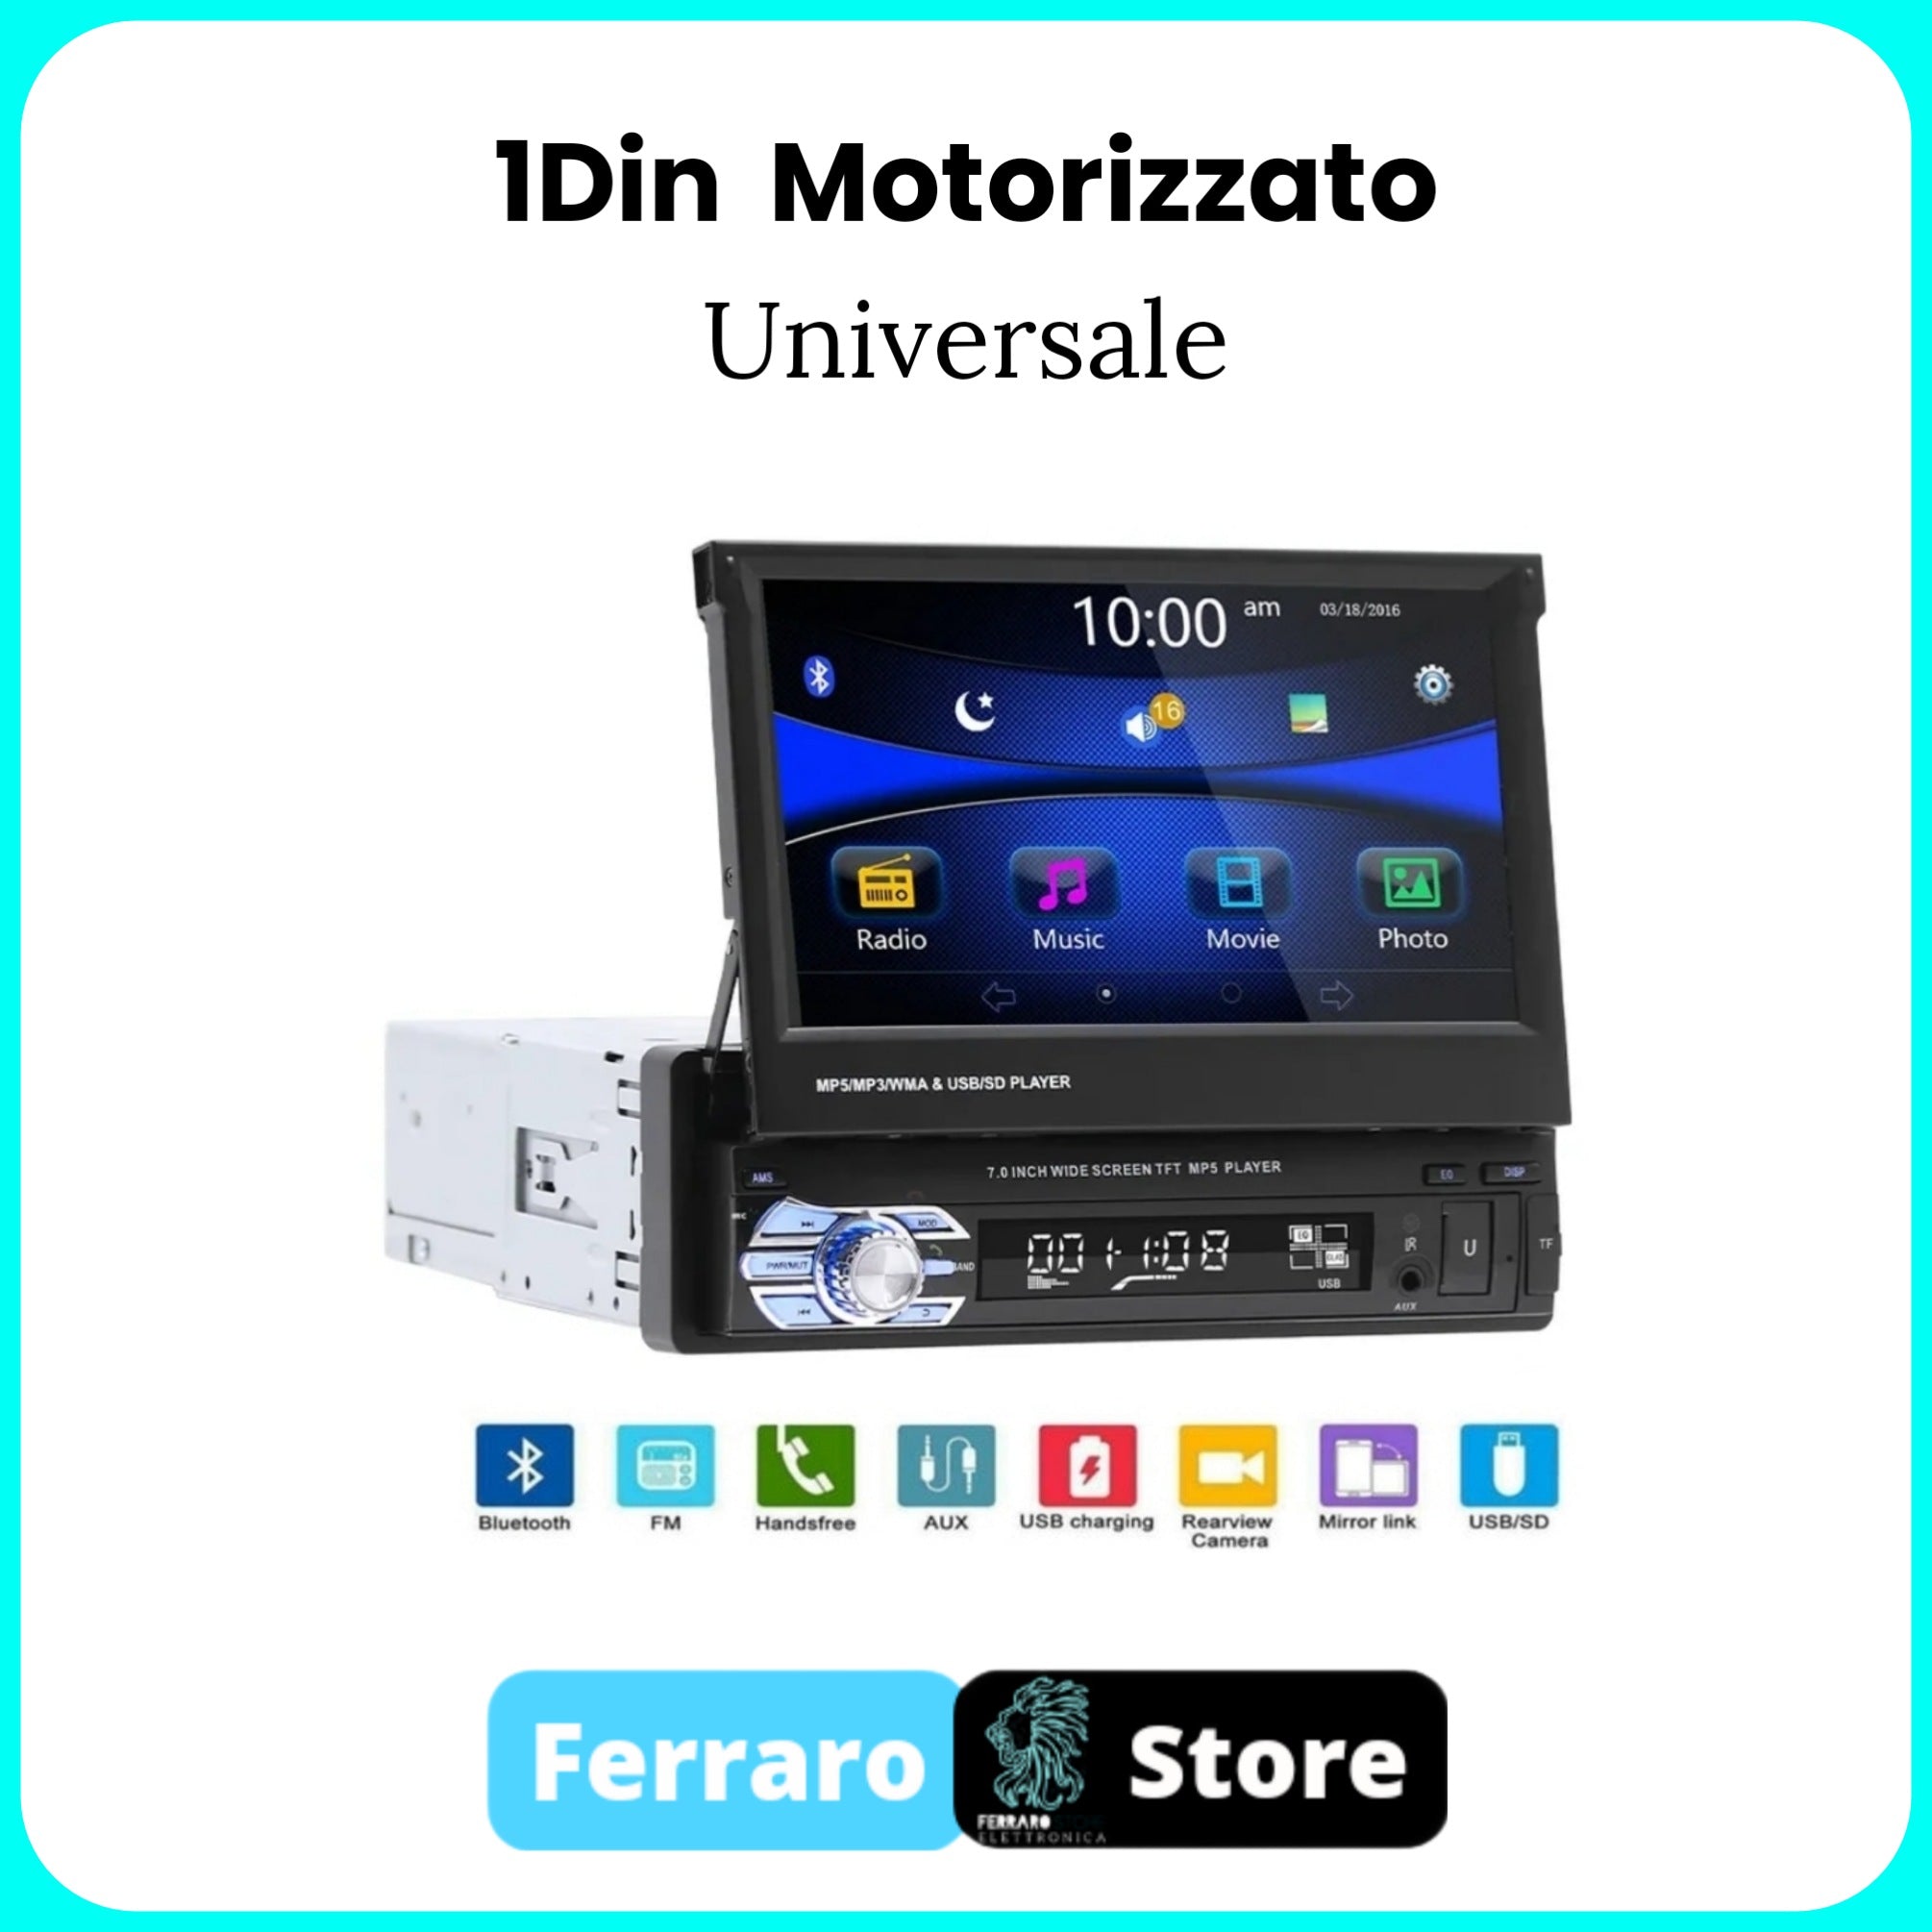 Autoradio Universale [MOTORIZZATO] - 1Din, Schermo 7"Pollici, Bluetooth, Radio, USB, Mirror Link per Android